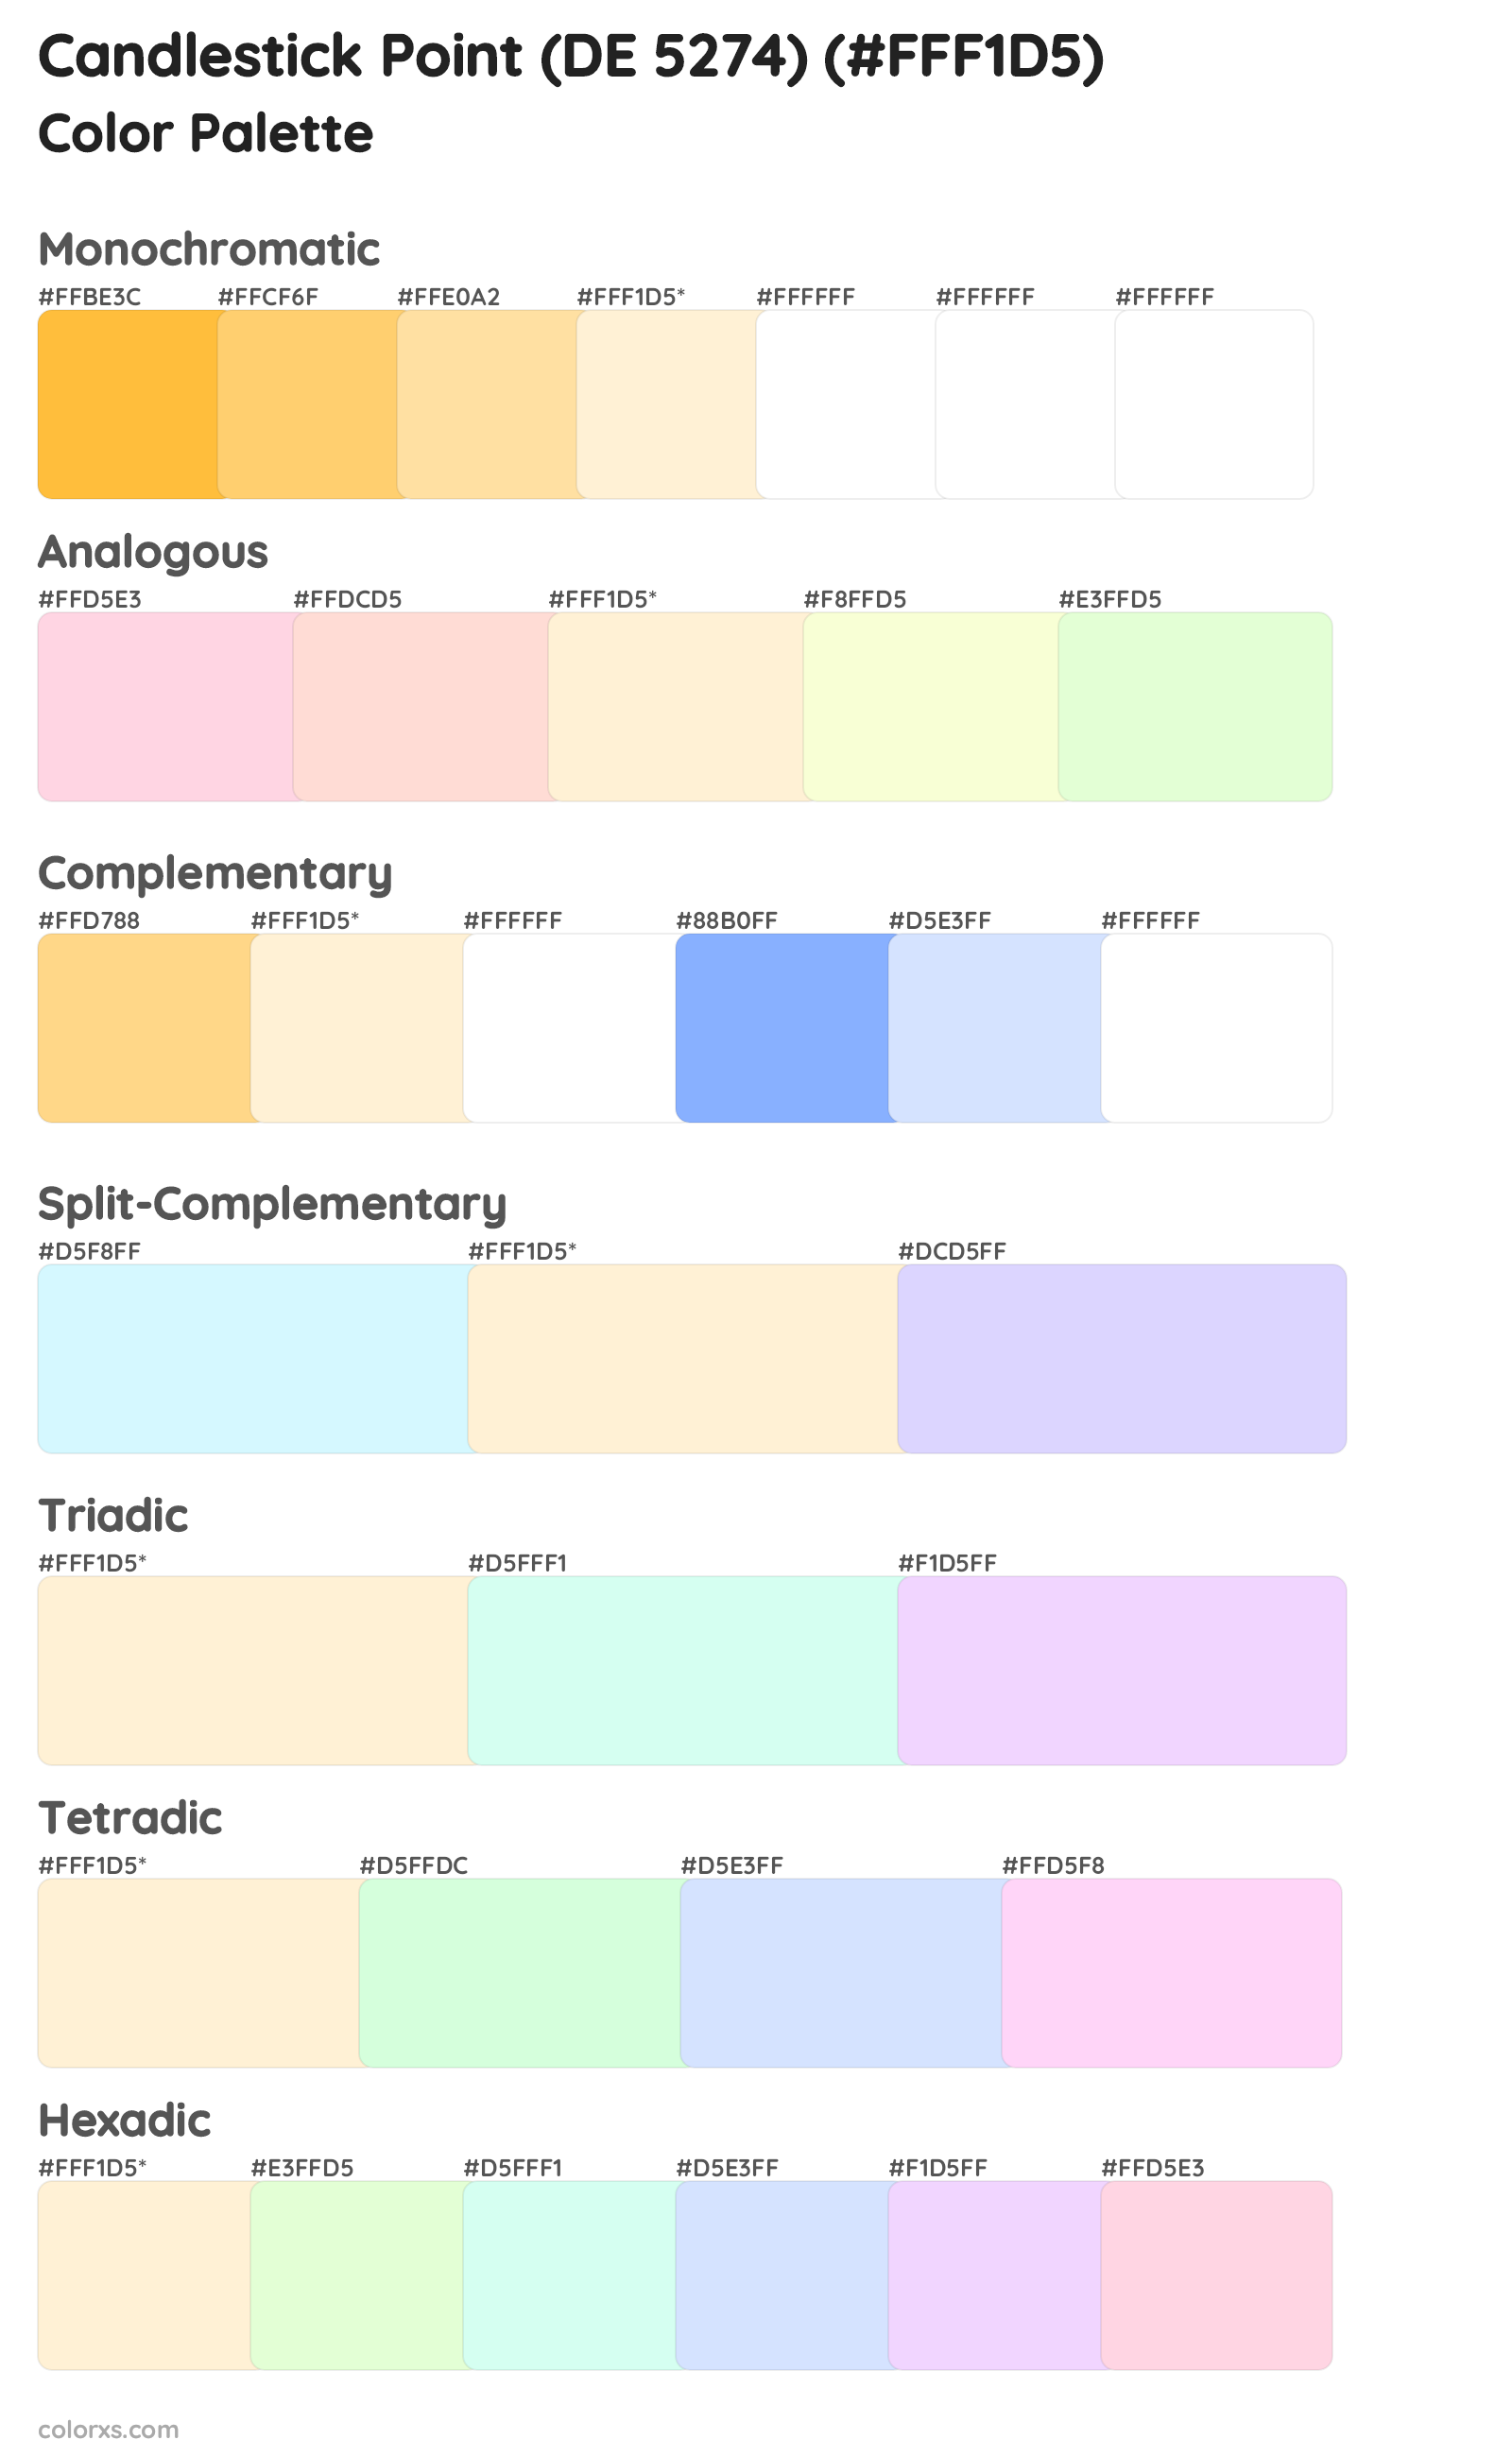 Candlestick Point (DE 5274) Color Scheme Palettes